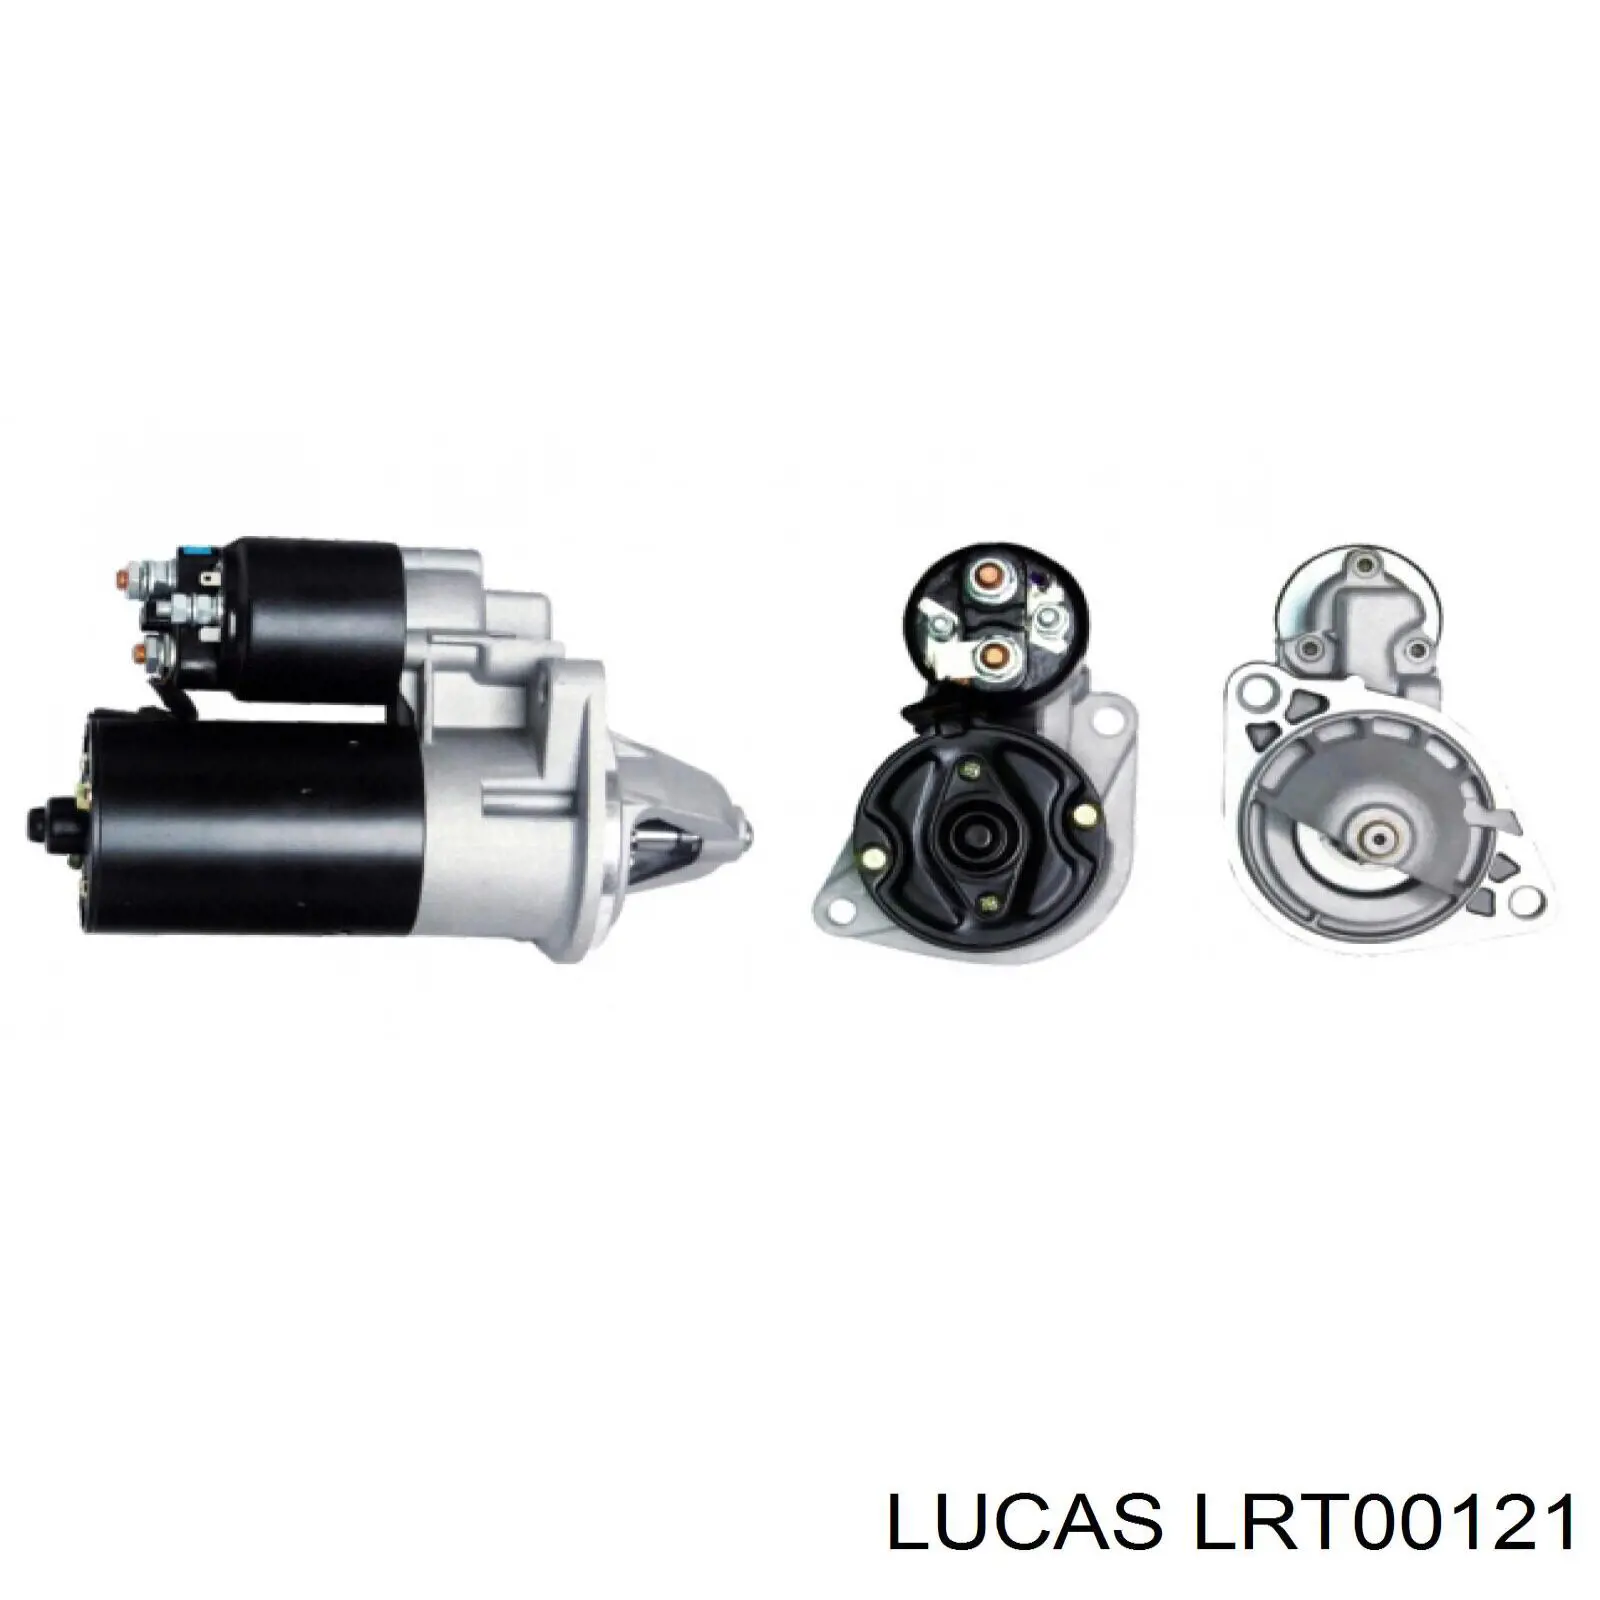 LRT00121 Lucas motor de arranque